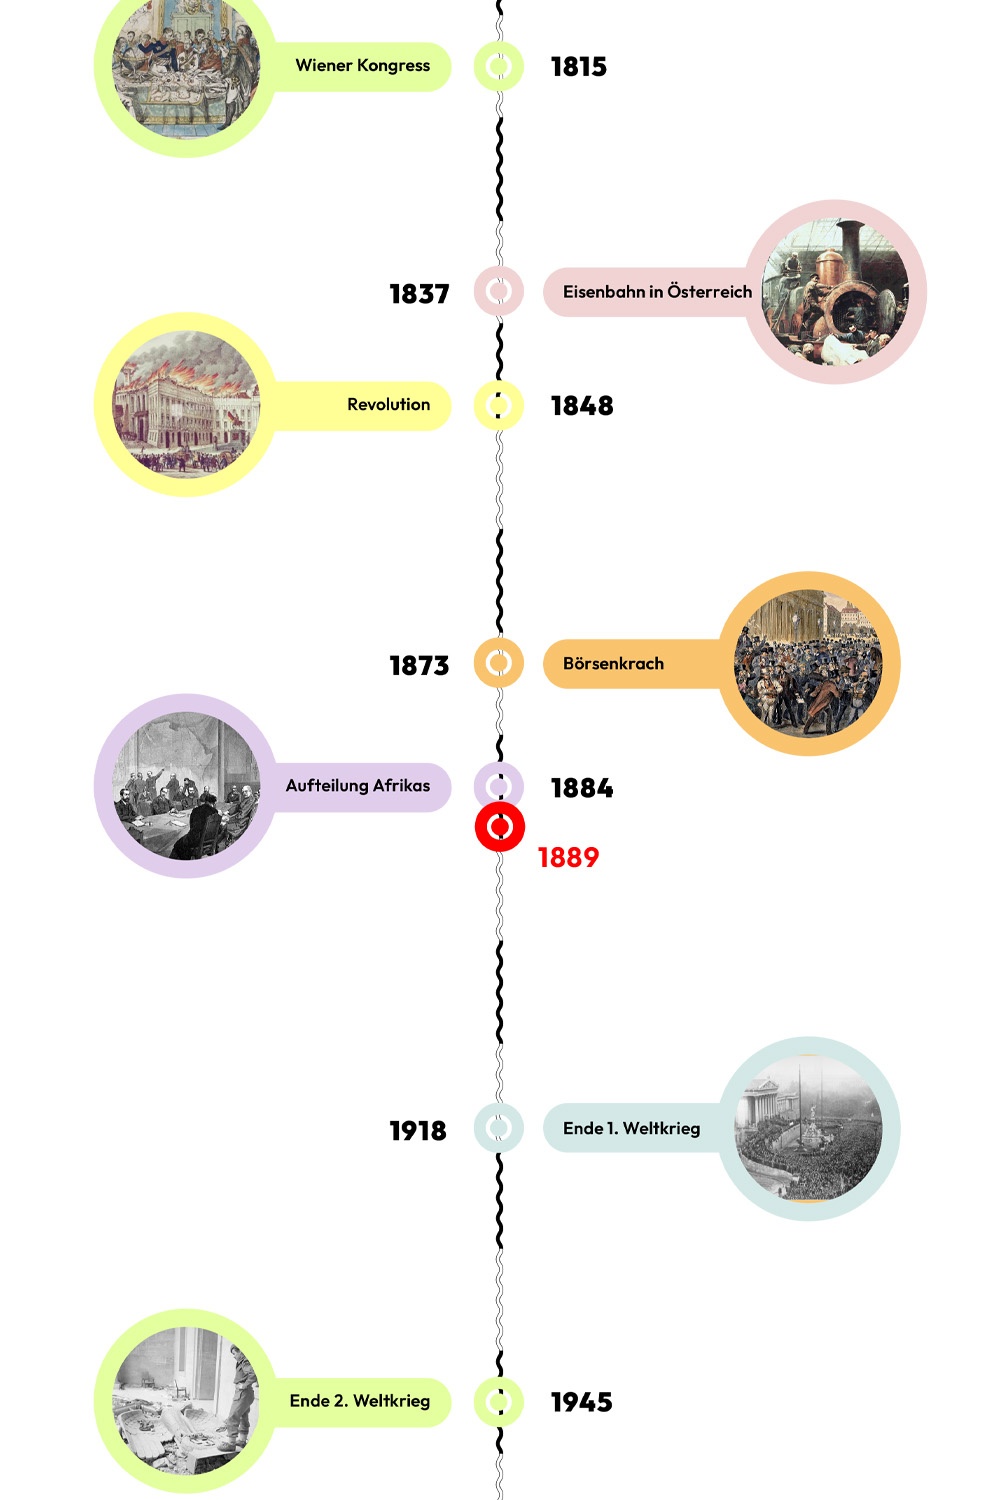 Zeitstrahl mit historischen Ereignissen - 1889 ist hervorgehoben. © wasbishergeschah.at